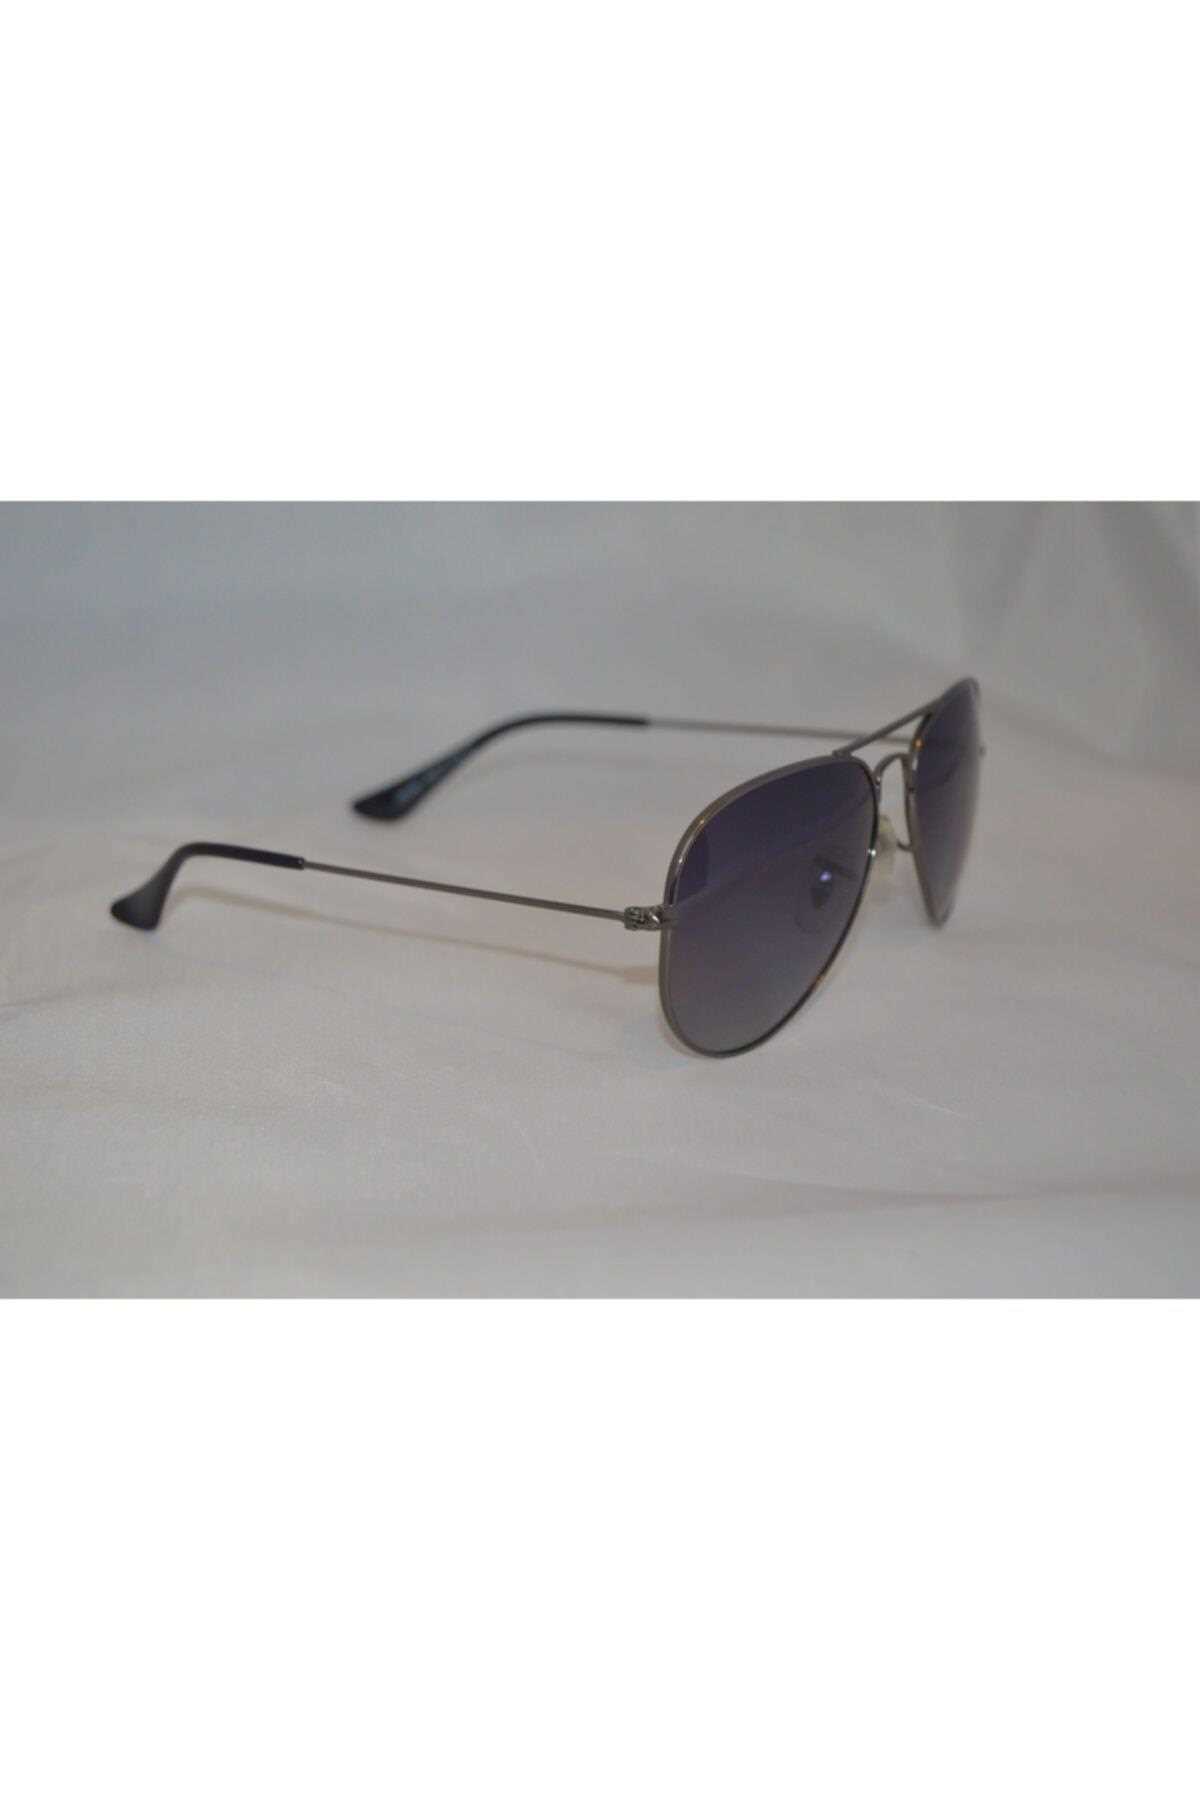 قیمت عینک آفتابی زنانه برند Optelli C2 ty138700630